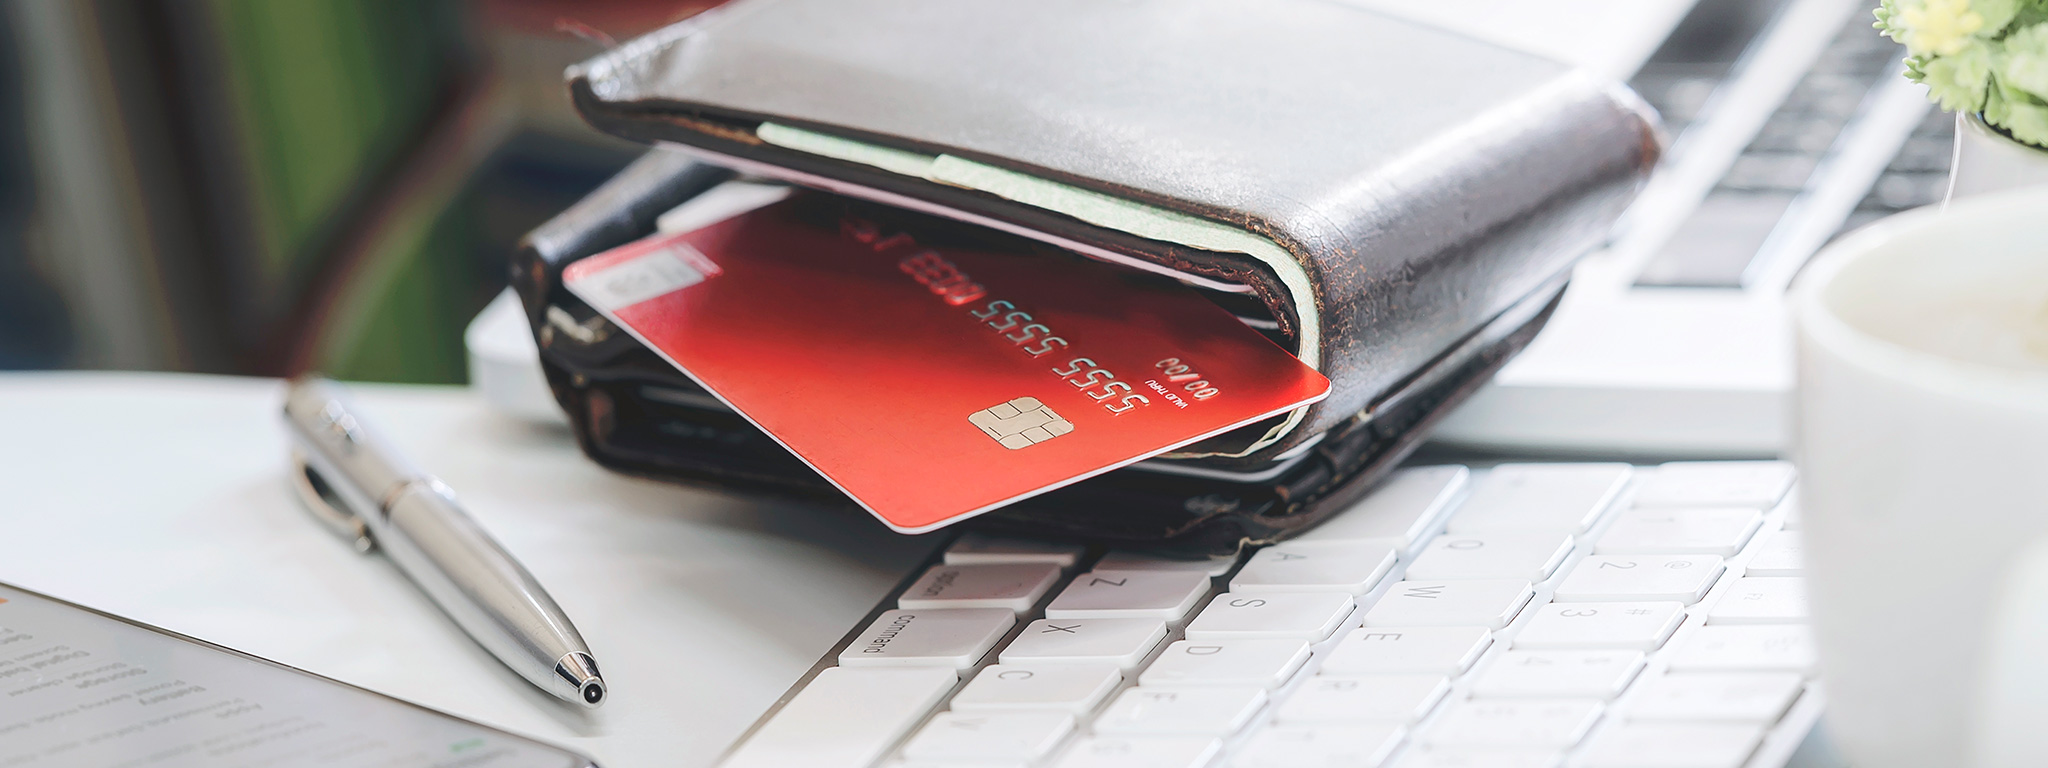 Como evitar fraudes de cartão de crédito